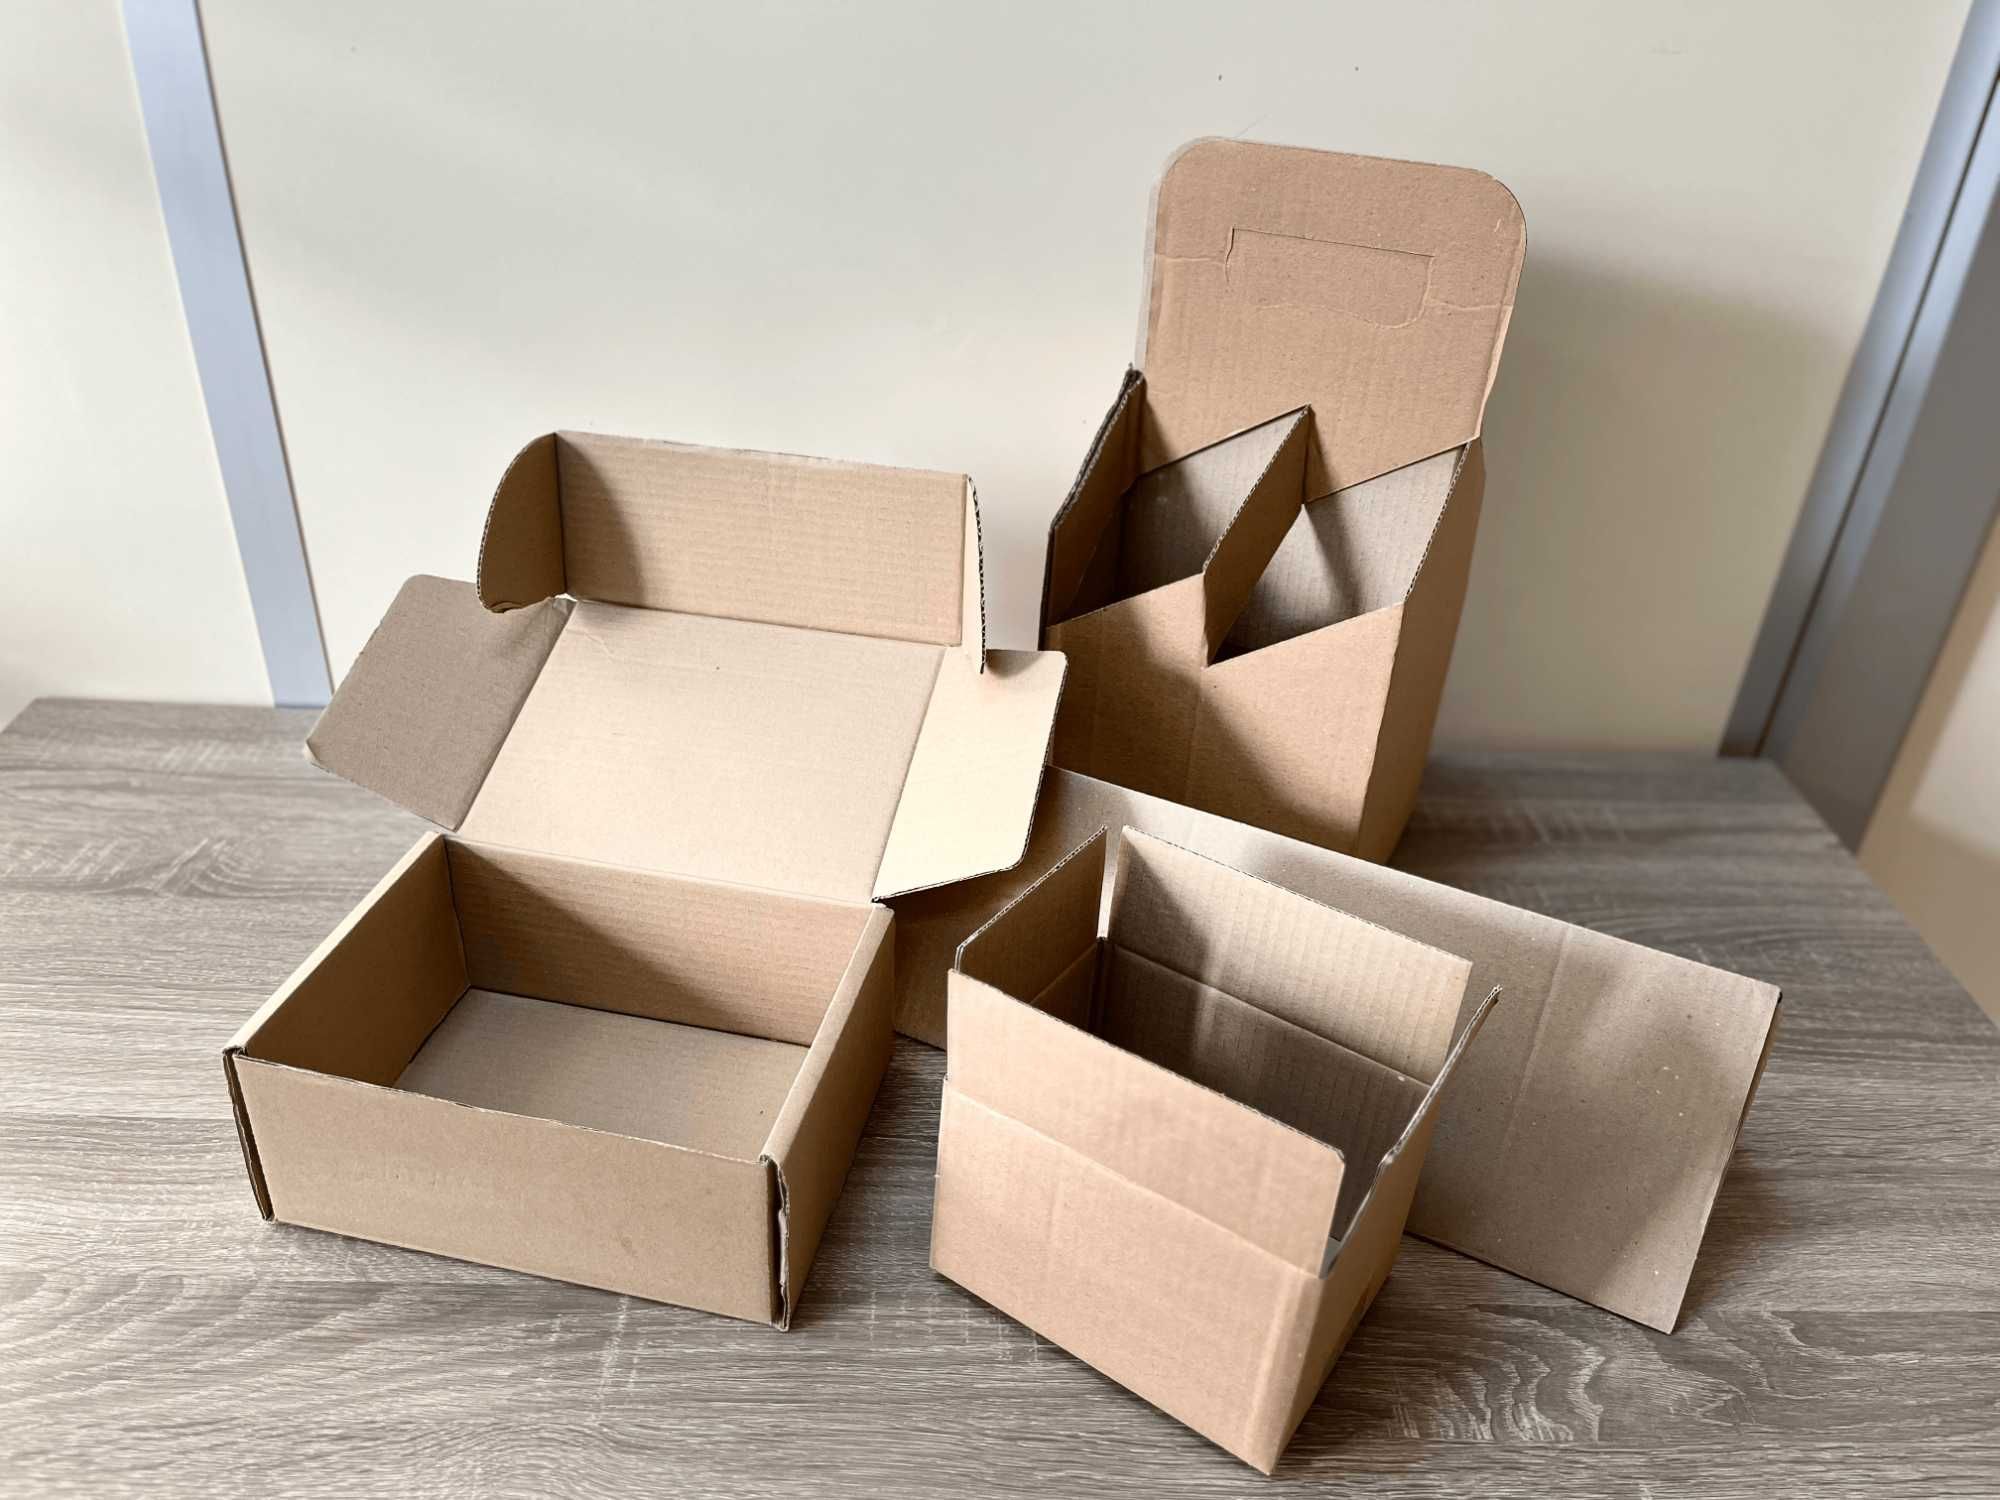 Картонні коробки, коробки, коробки для переїзду, упаковка, гофроящик